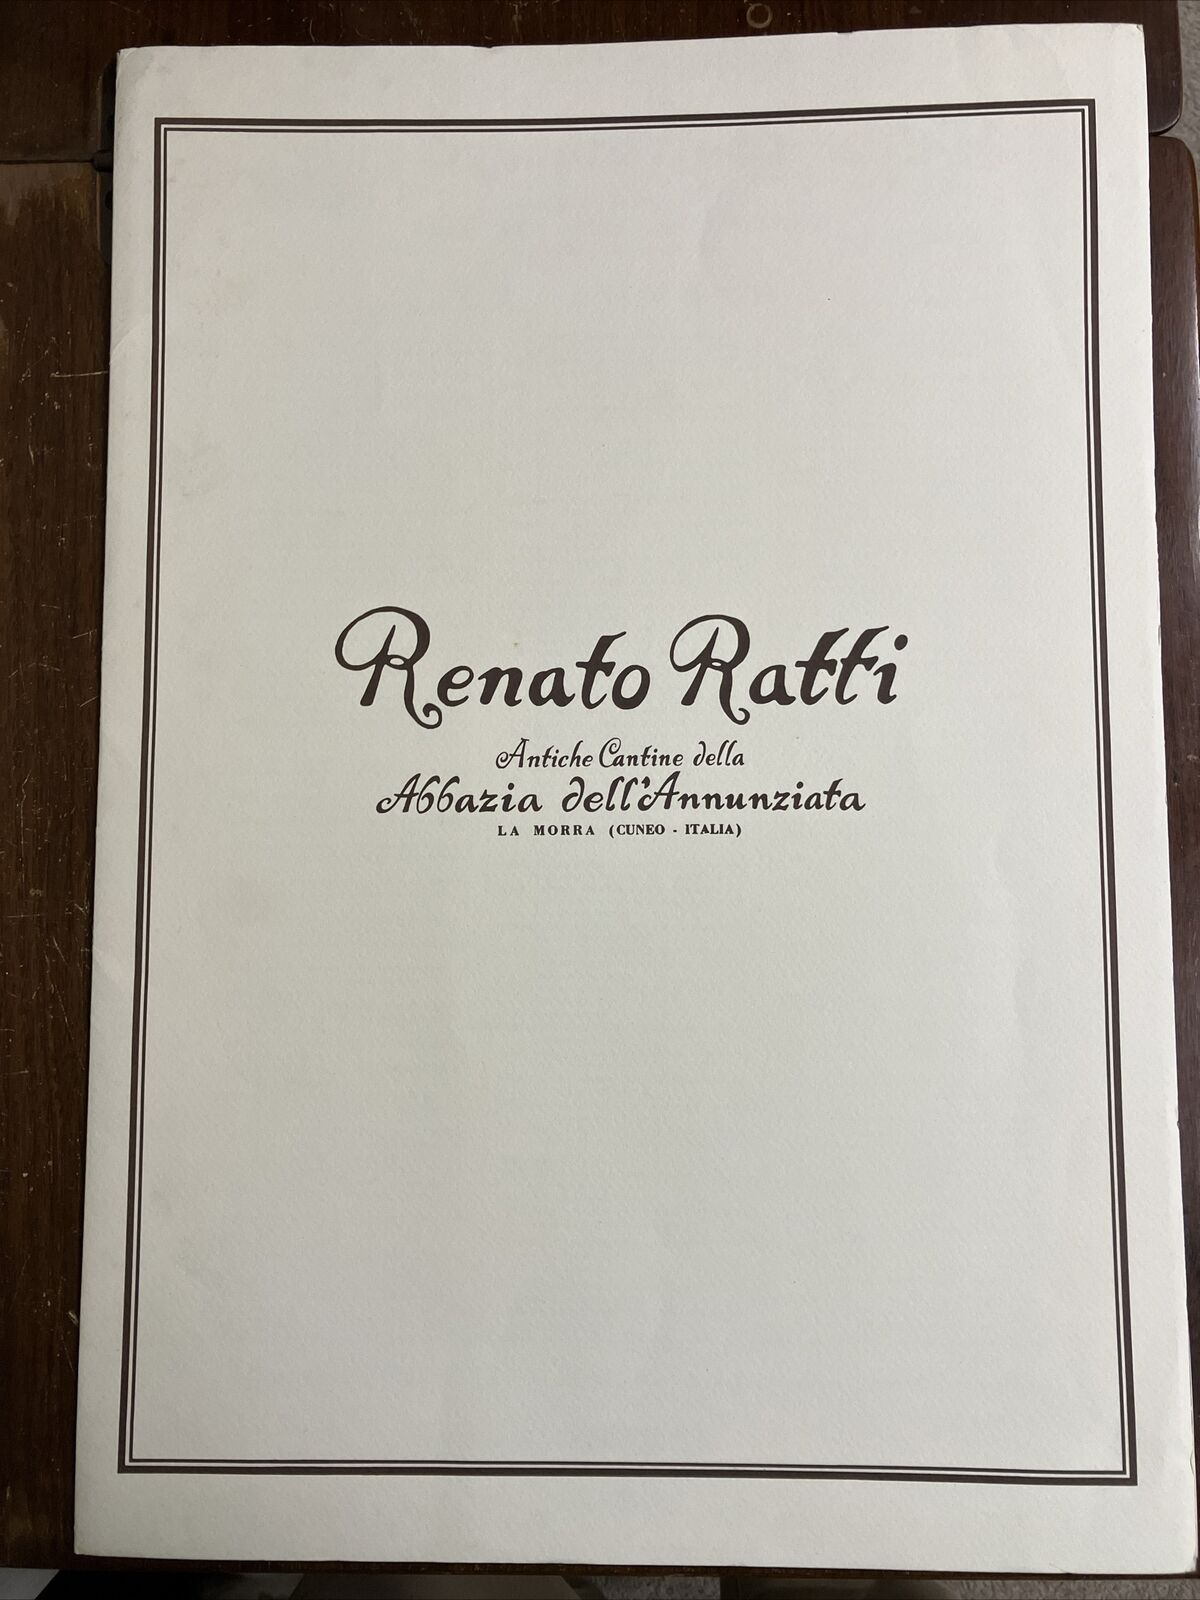 Vintage 1980s Renato Ratti Portfolio Of Wine Maps & Prints All In Italian 14x20”